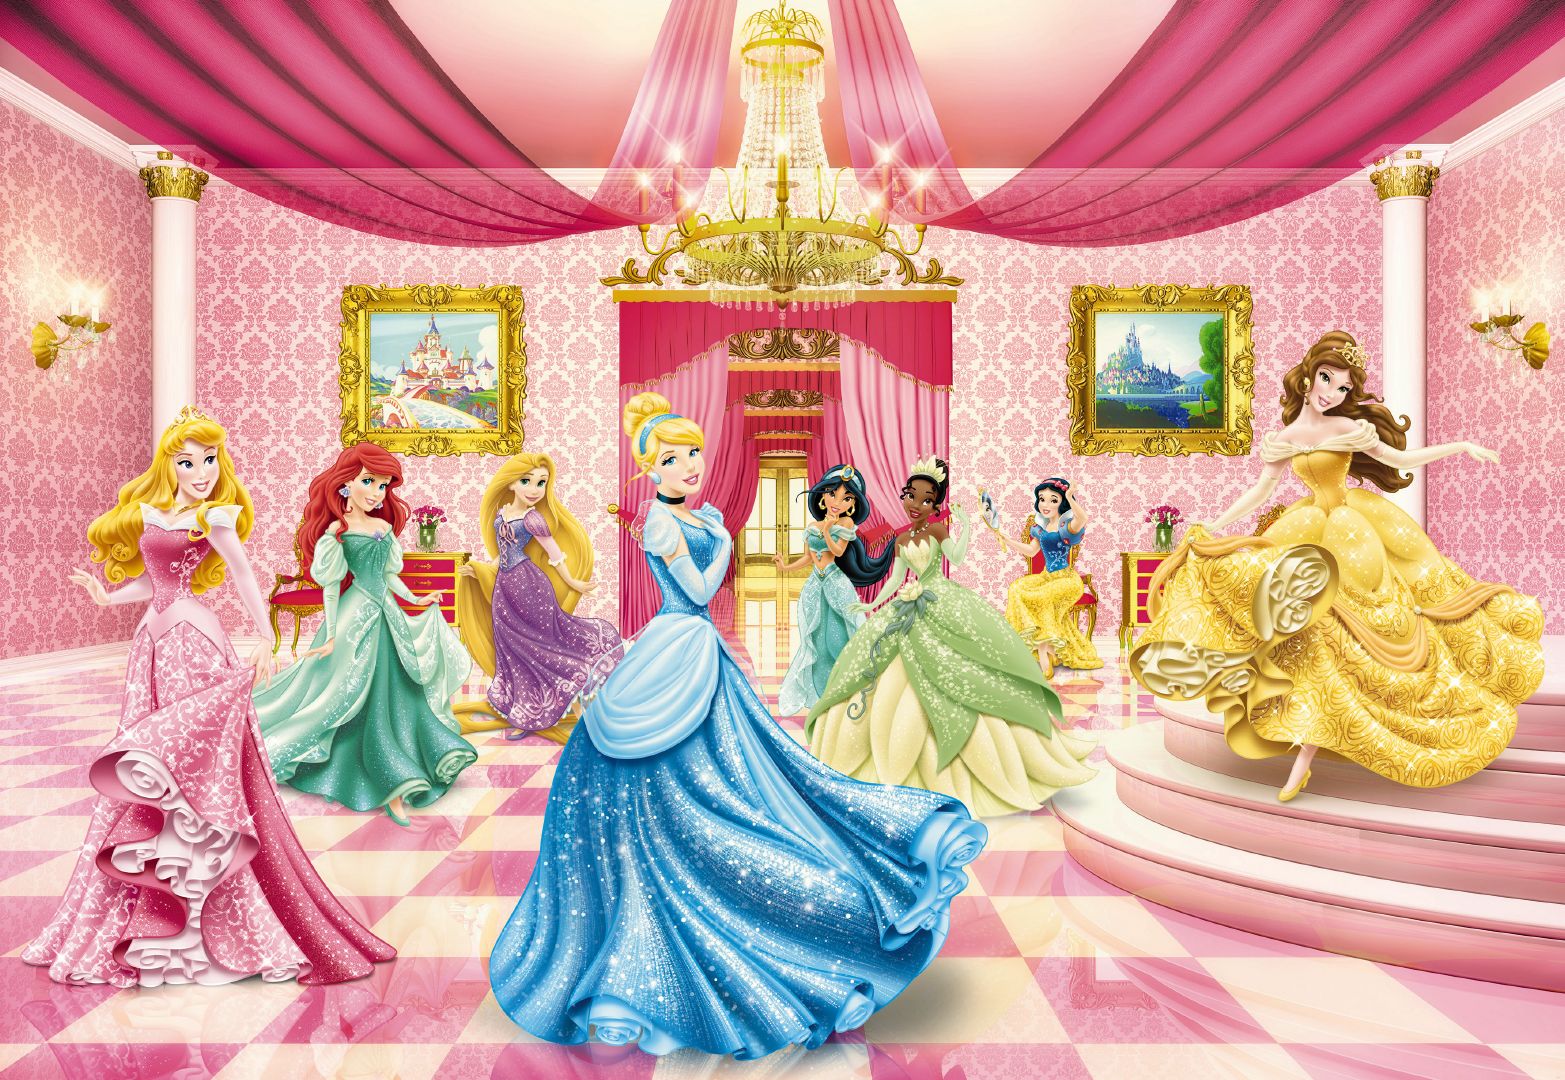 Wallpaper Princess Ballroom Wall Art For Girls Disney Pink